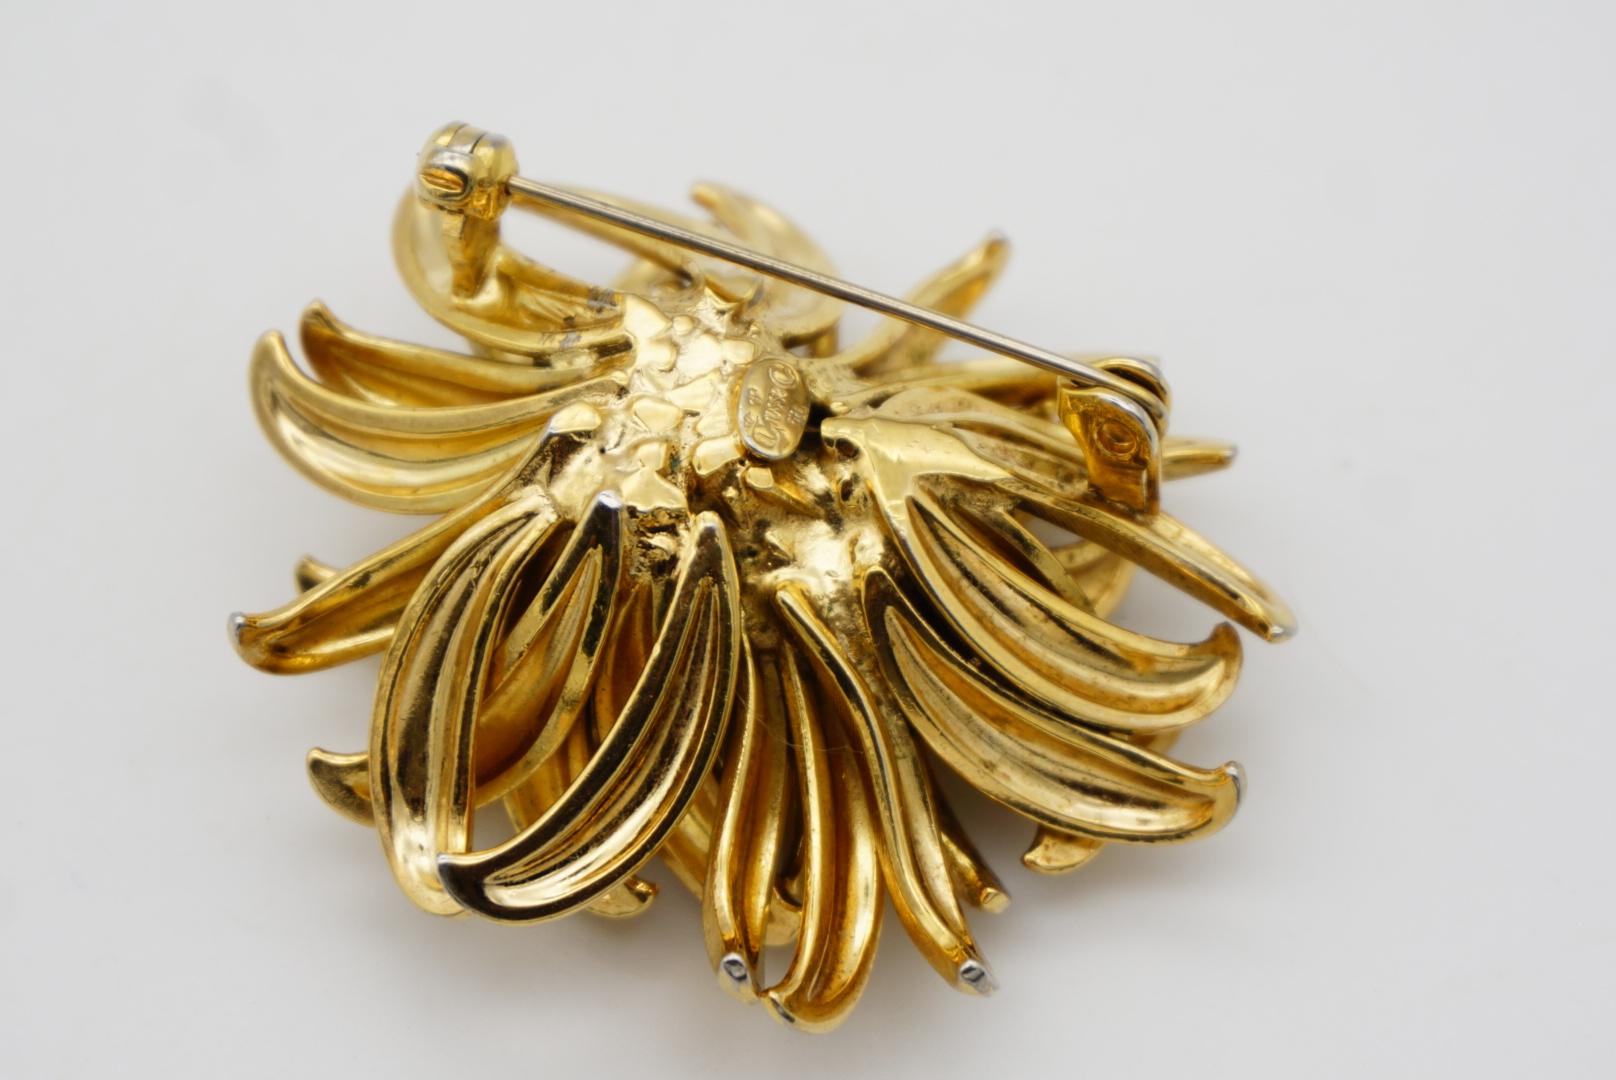 Christian Dior GROSSE 1958 Vintage Large Vivid Flower Gold Exquisite Brooch For Sale 7